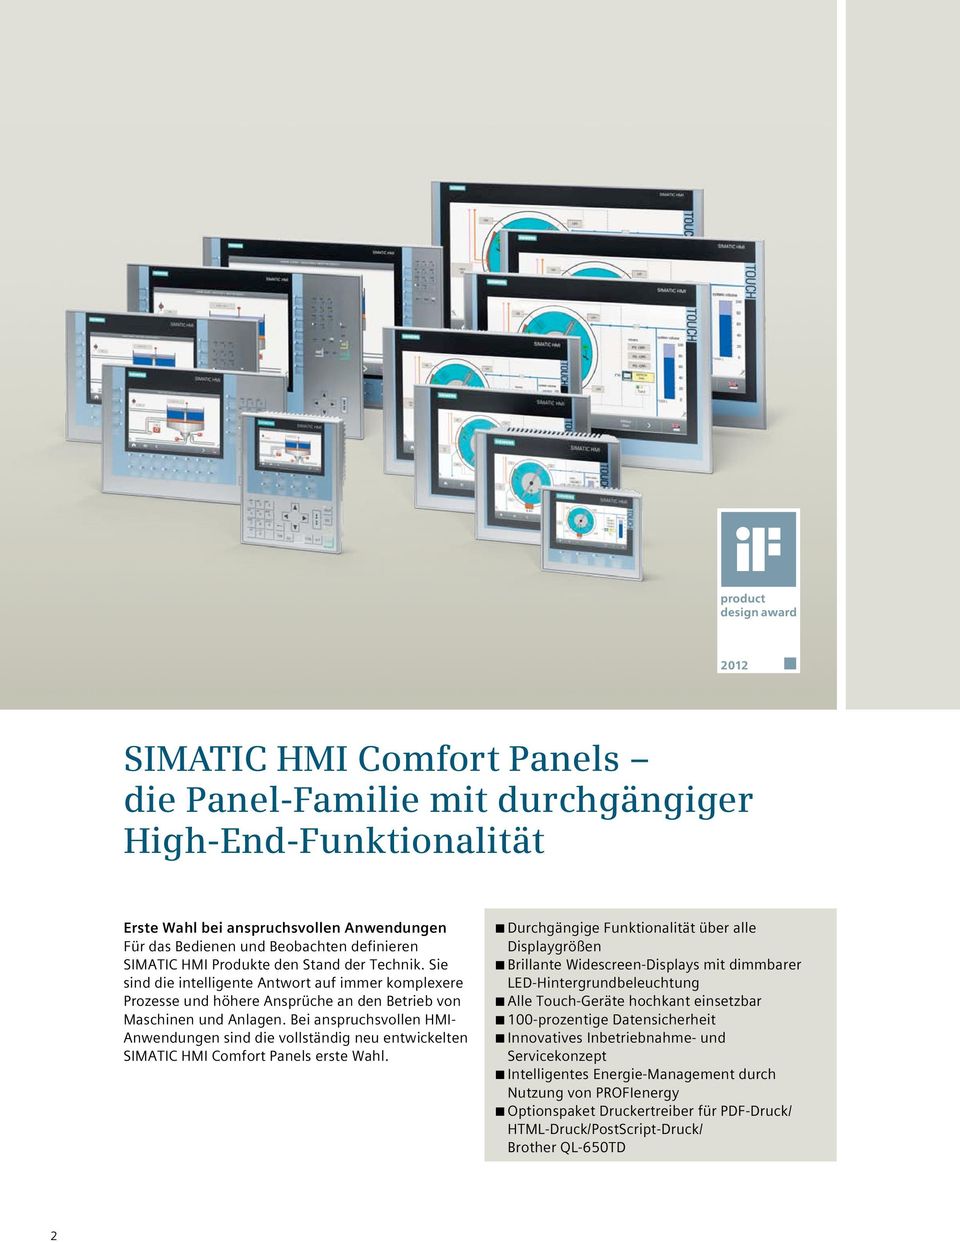 Bei anspruchsvollen HMI- Anwendungen sind die vollständig neu entwickelten SIMATIC HMI Comfort Panels erste Wahl.